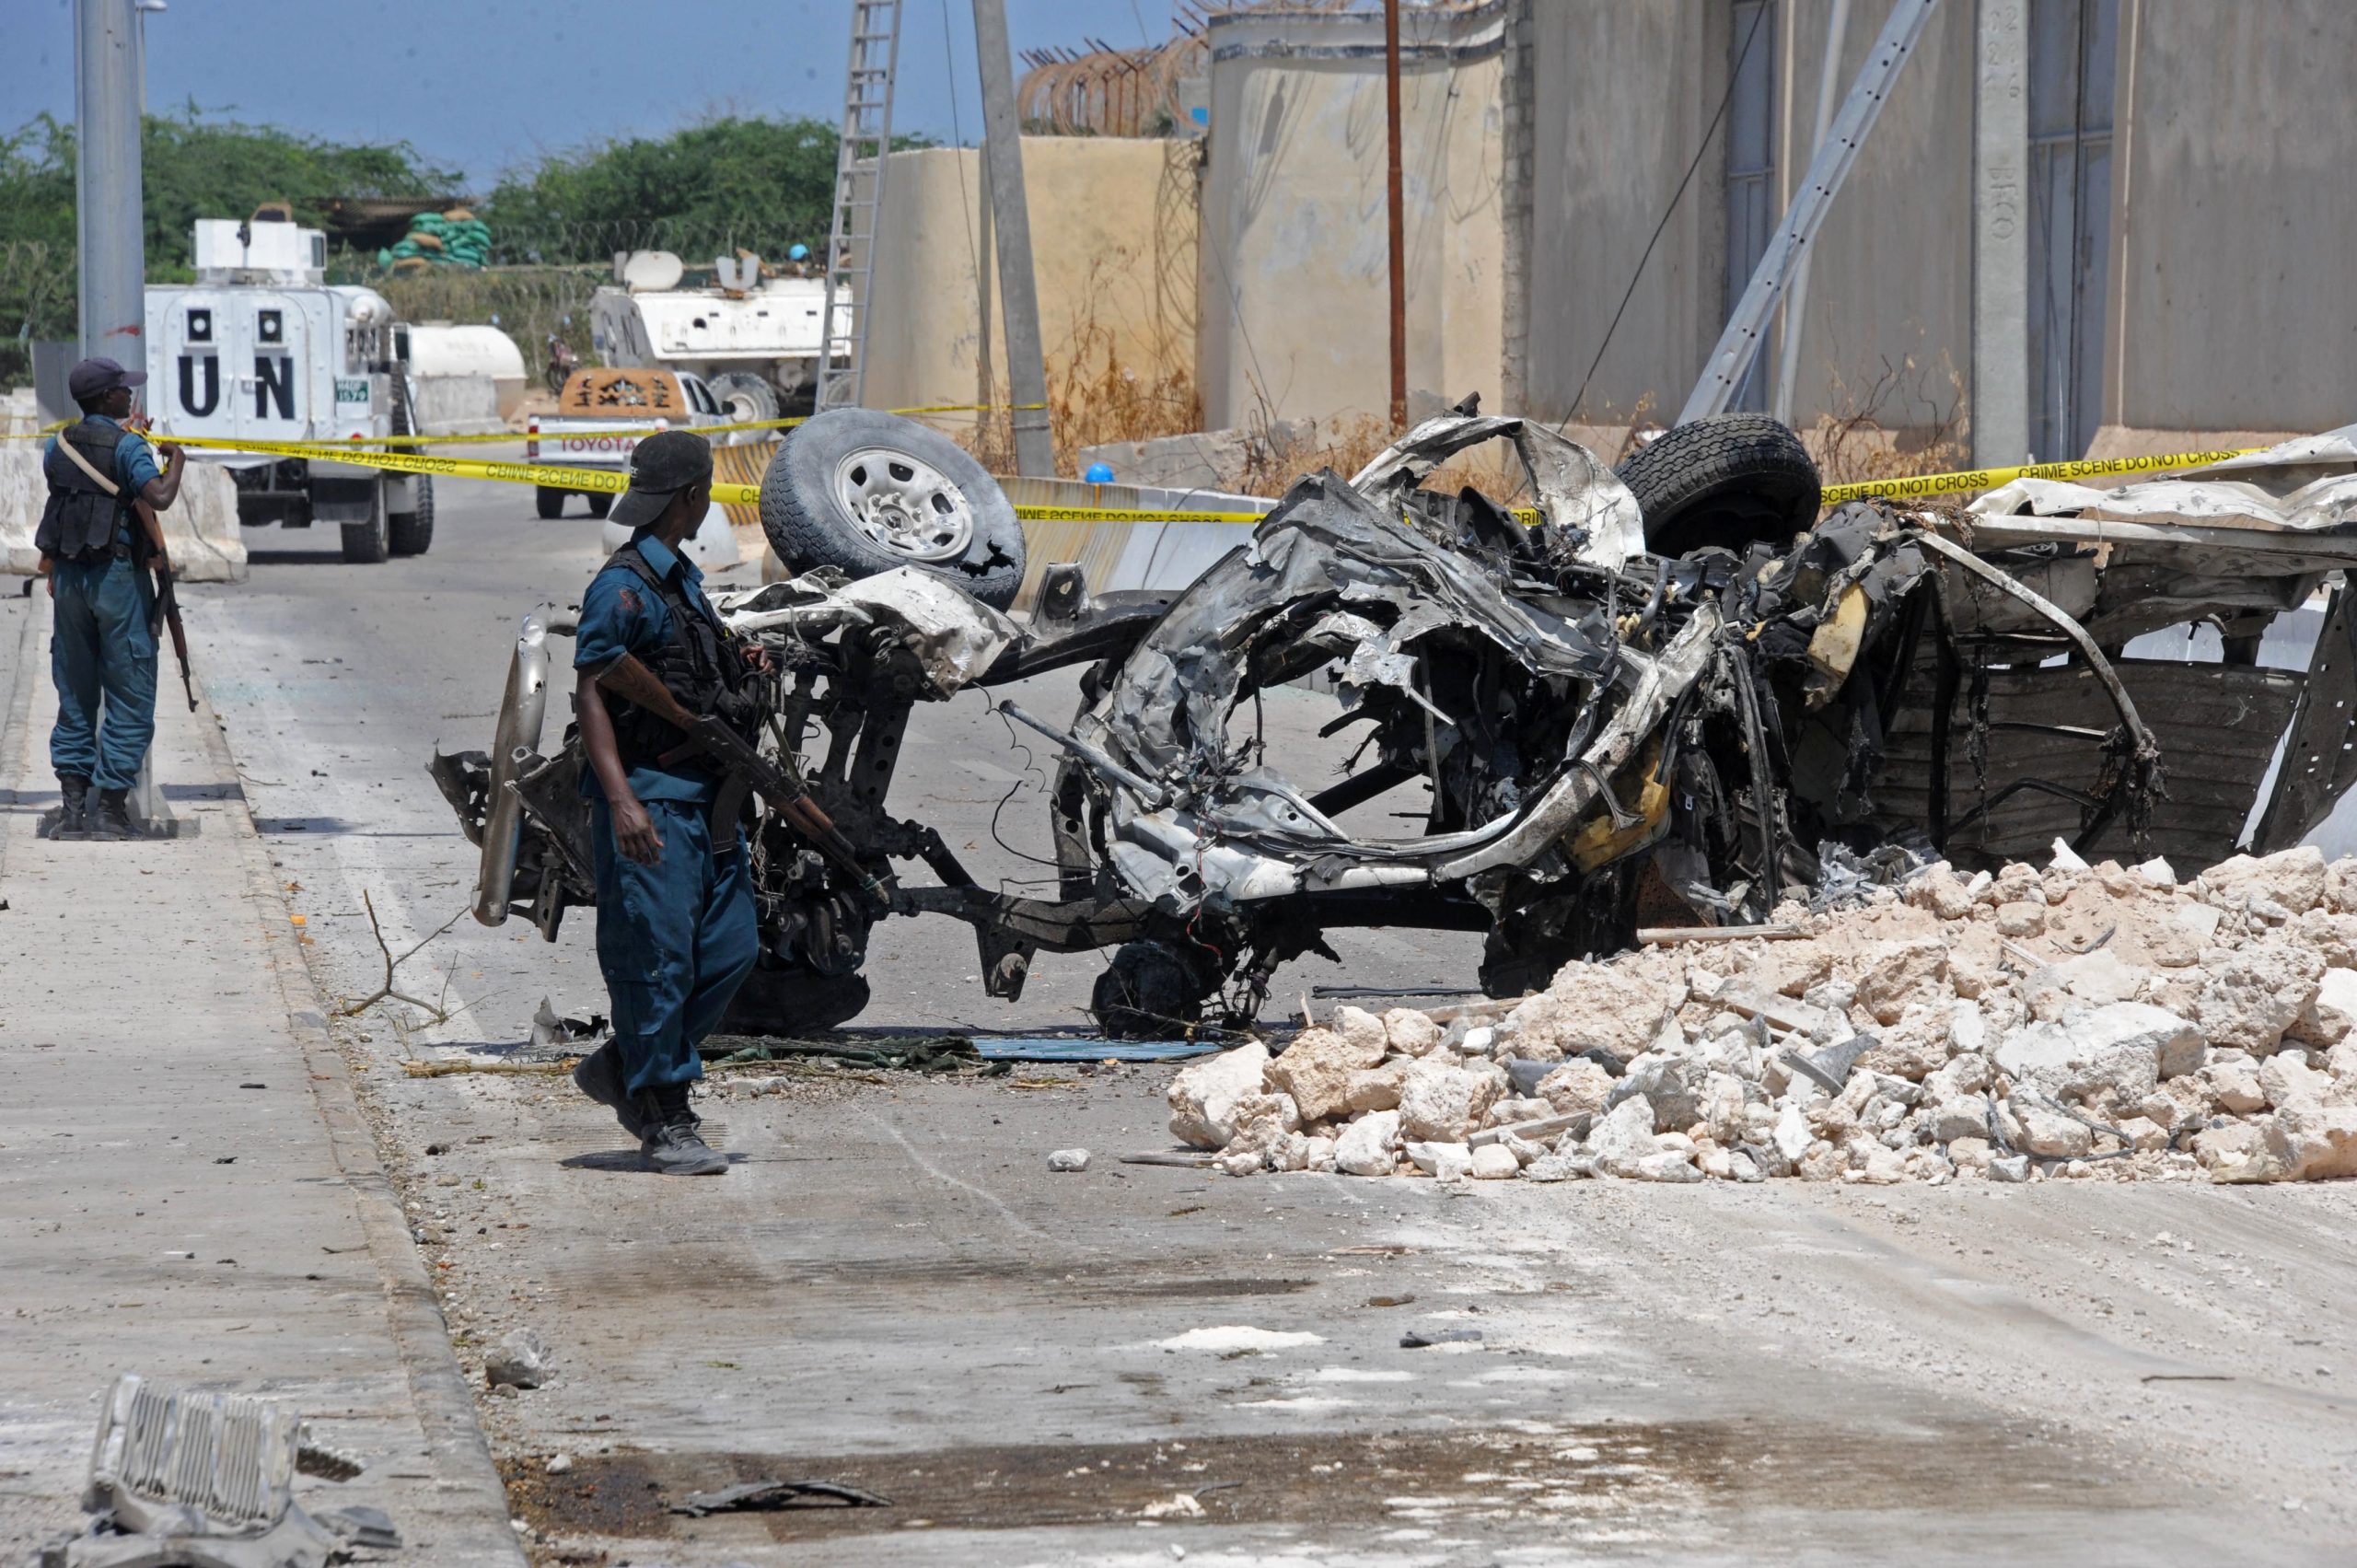 Σομαλία: Νέα επίθεση με παγιδευμένο όχημα από ισλαμιστές της Αλ Σεμπάμπ – Τουλάχιστον 2 νεκροί